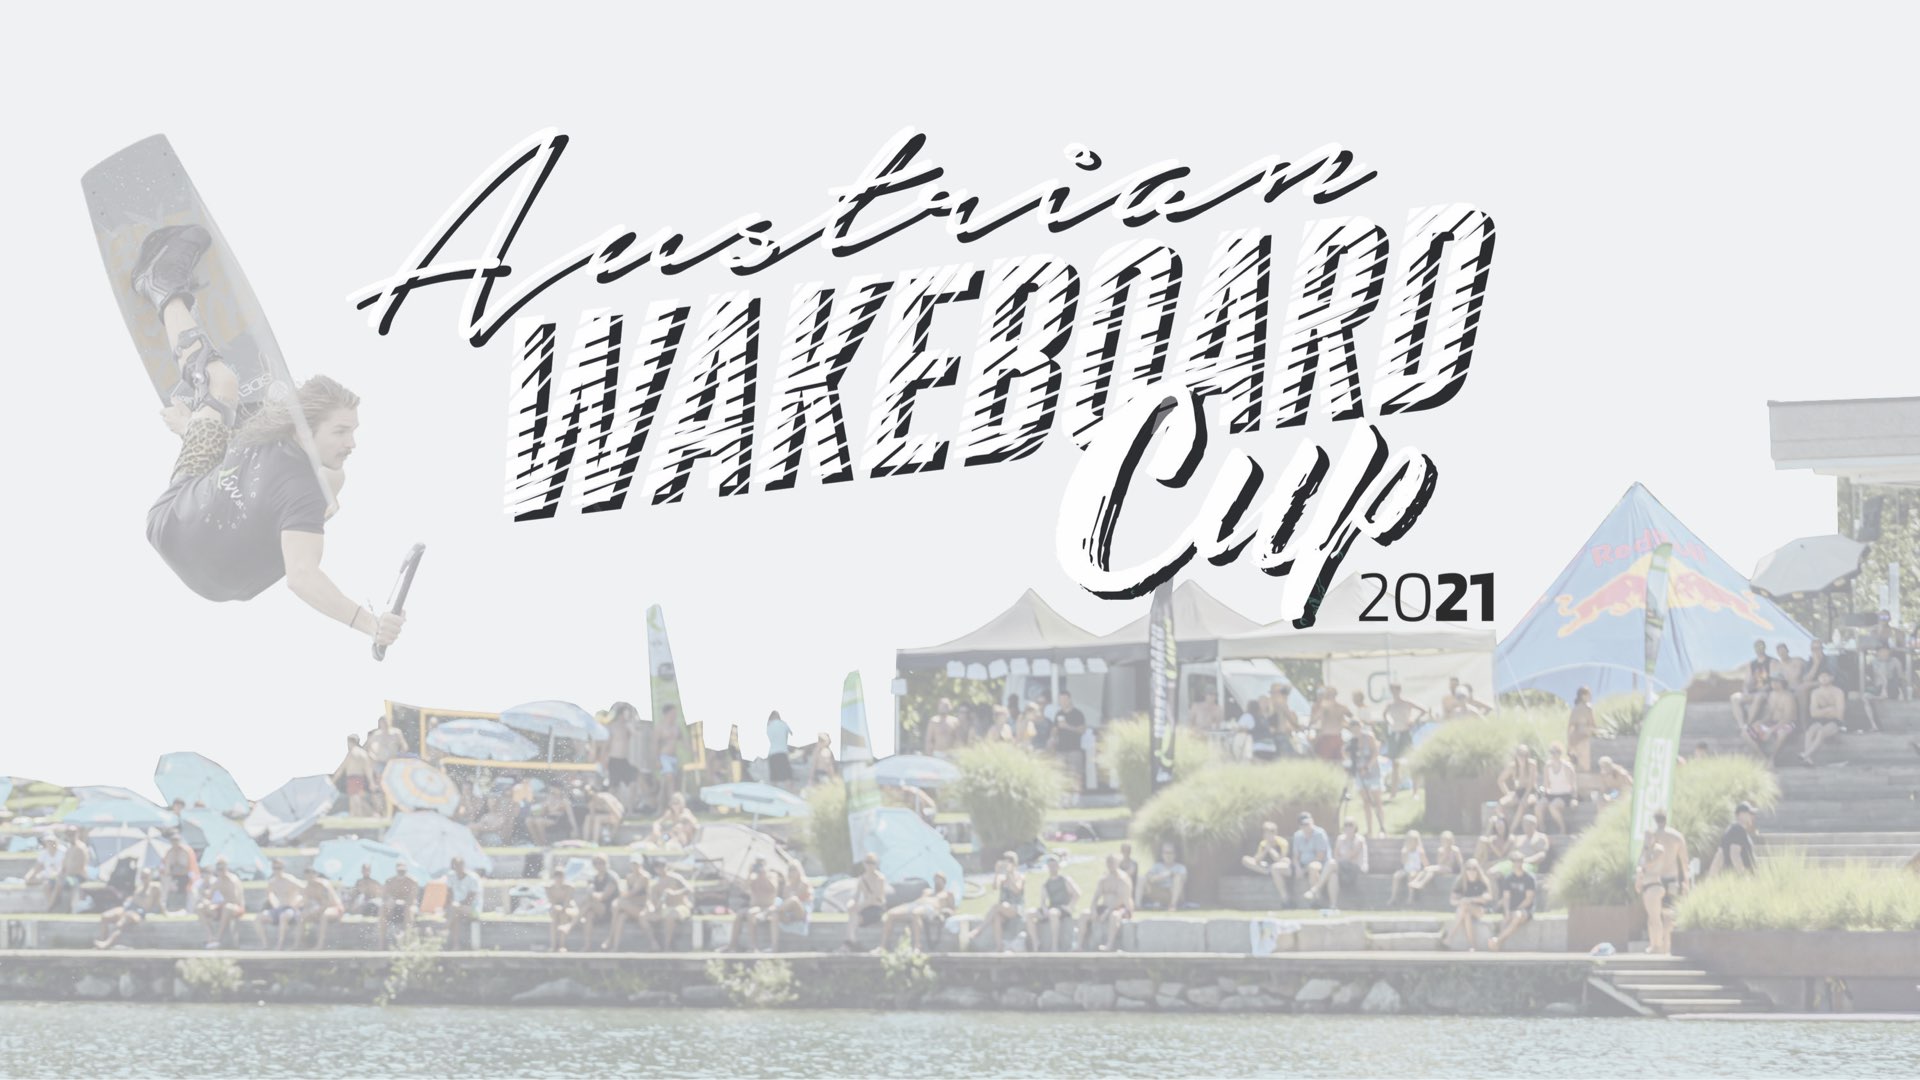 Austrian Wakeboard Cup 2.0: #2 Best Flip (Boat)